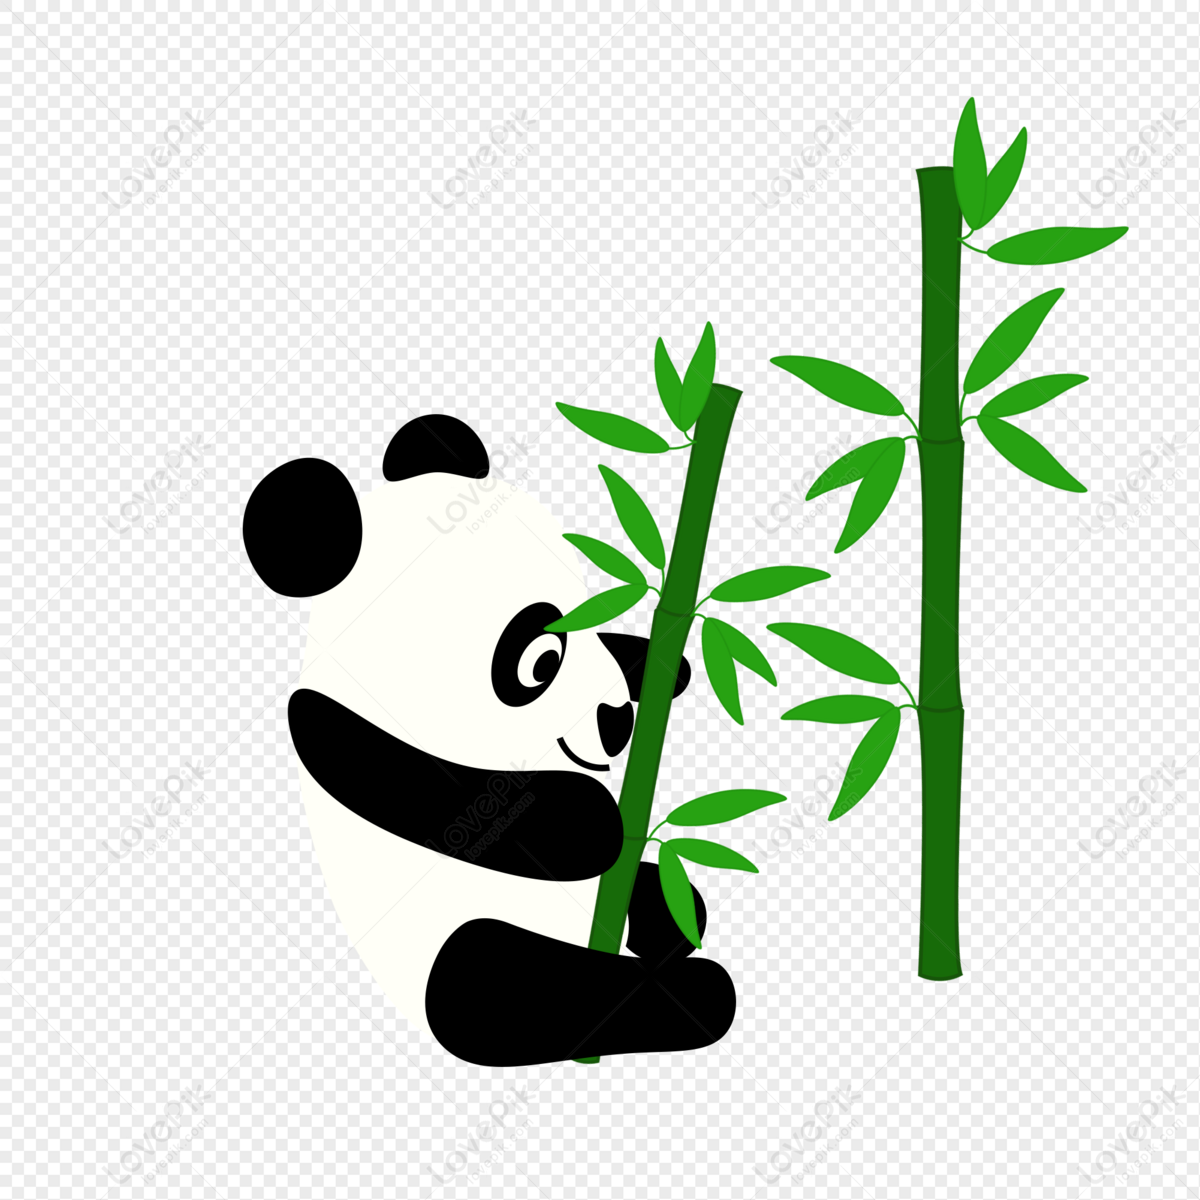 Garota De Panda Dos Desenhos Animados PNG Imagens Gratuitas Para Download -  Lovepik